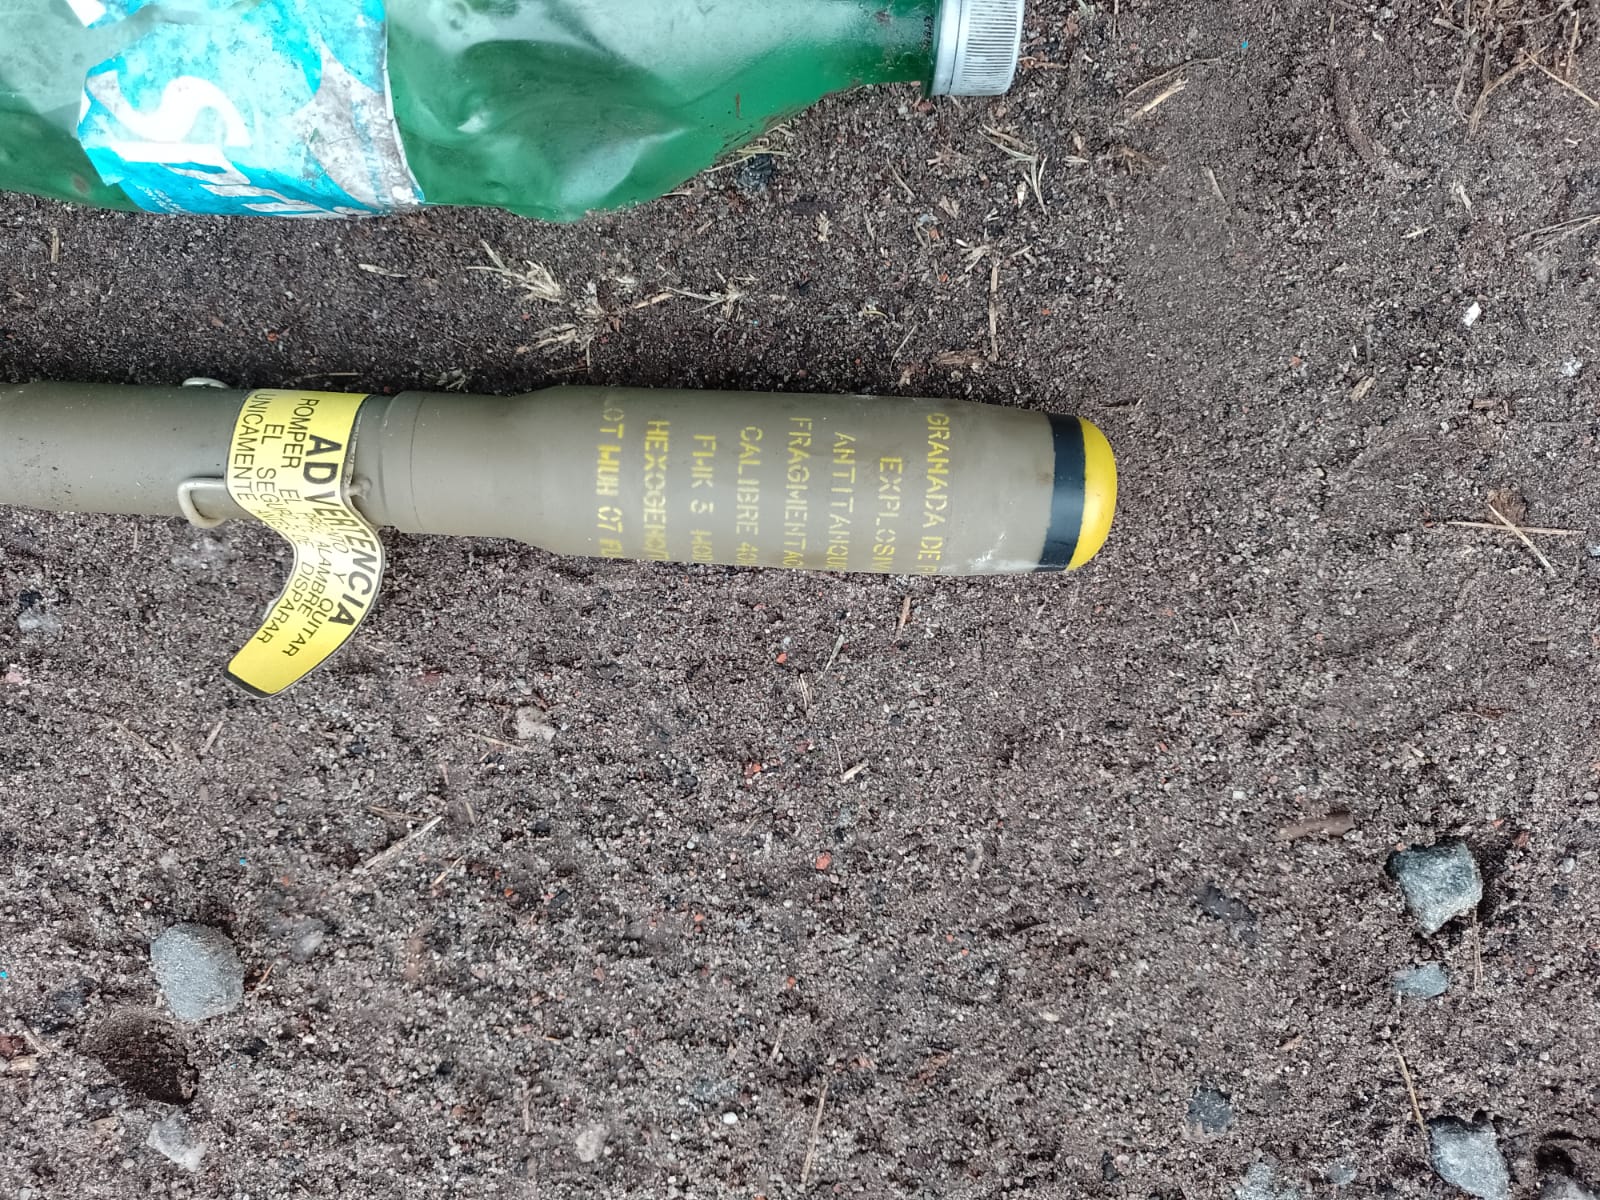 El insólito arsenal de explosivos y granadas encontrado en bolsas de basura frente a un camping de Ezeiza ADLBMYP7JFFU5OB2MRXIPQMJAI